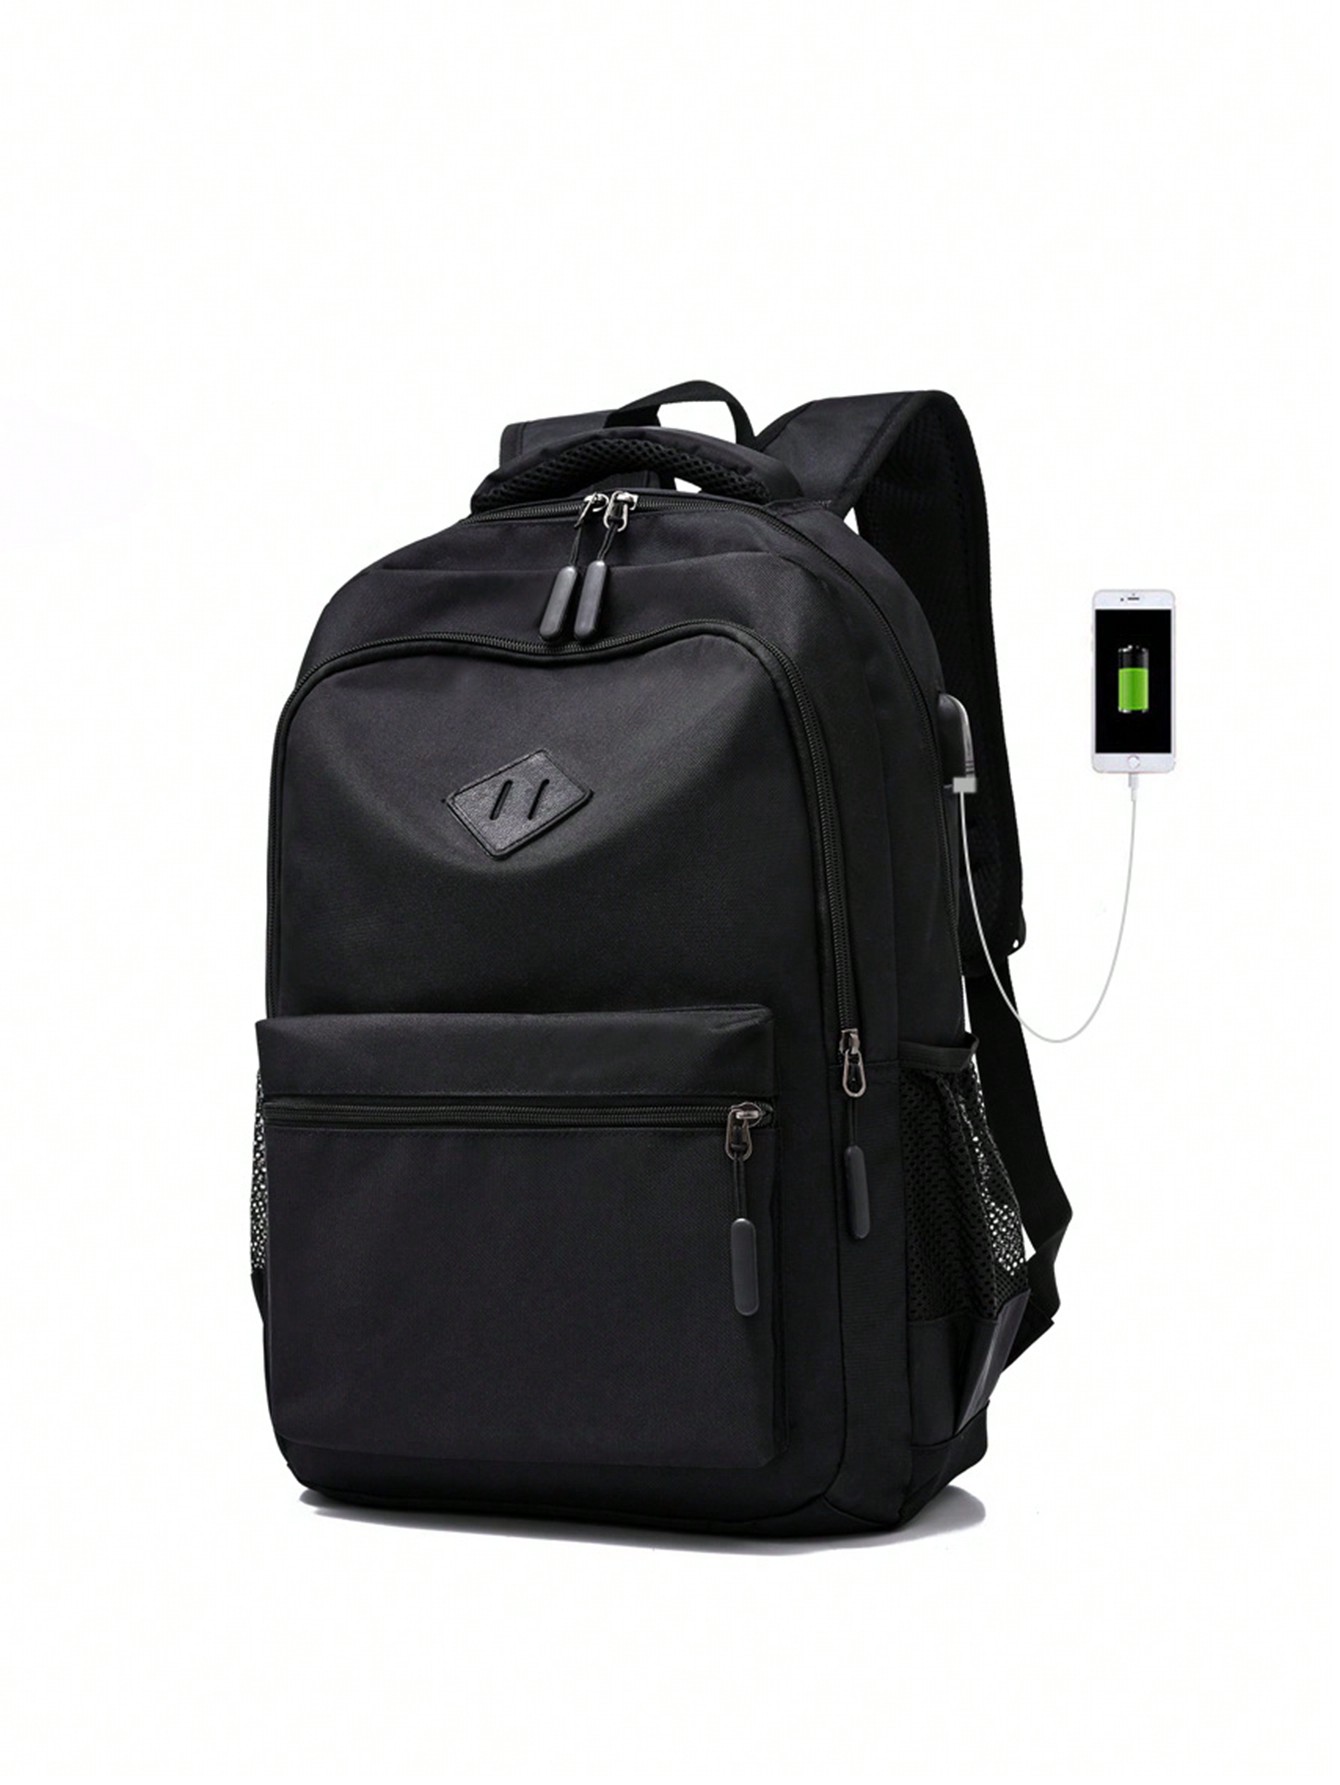 Рюкзак для учащихся средней, черный мужской минималистичный рюкзак большой вместимости серый